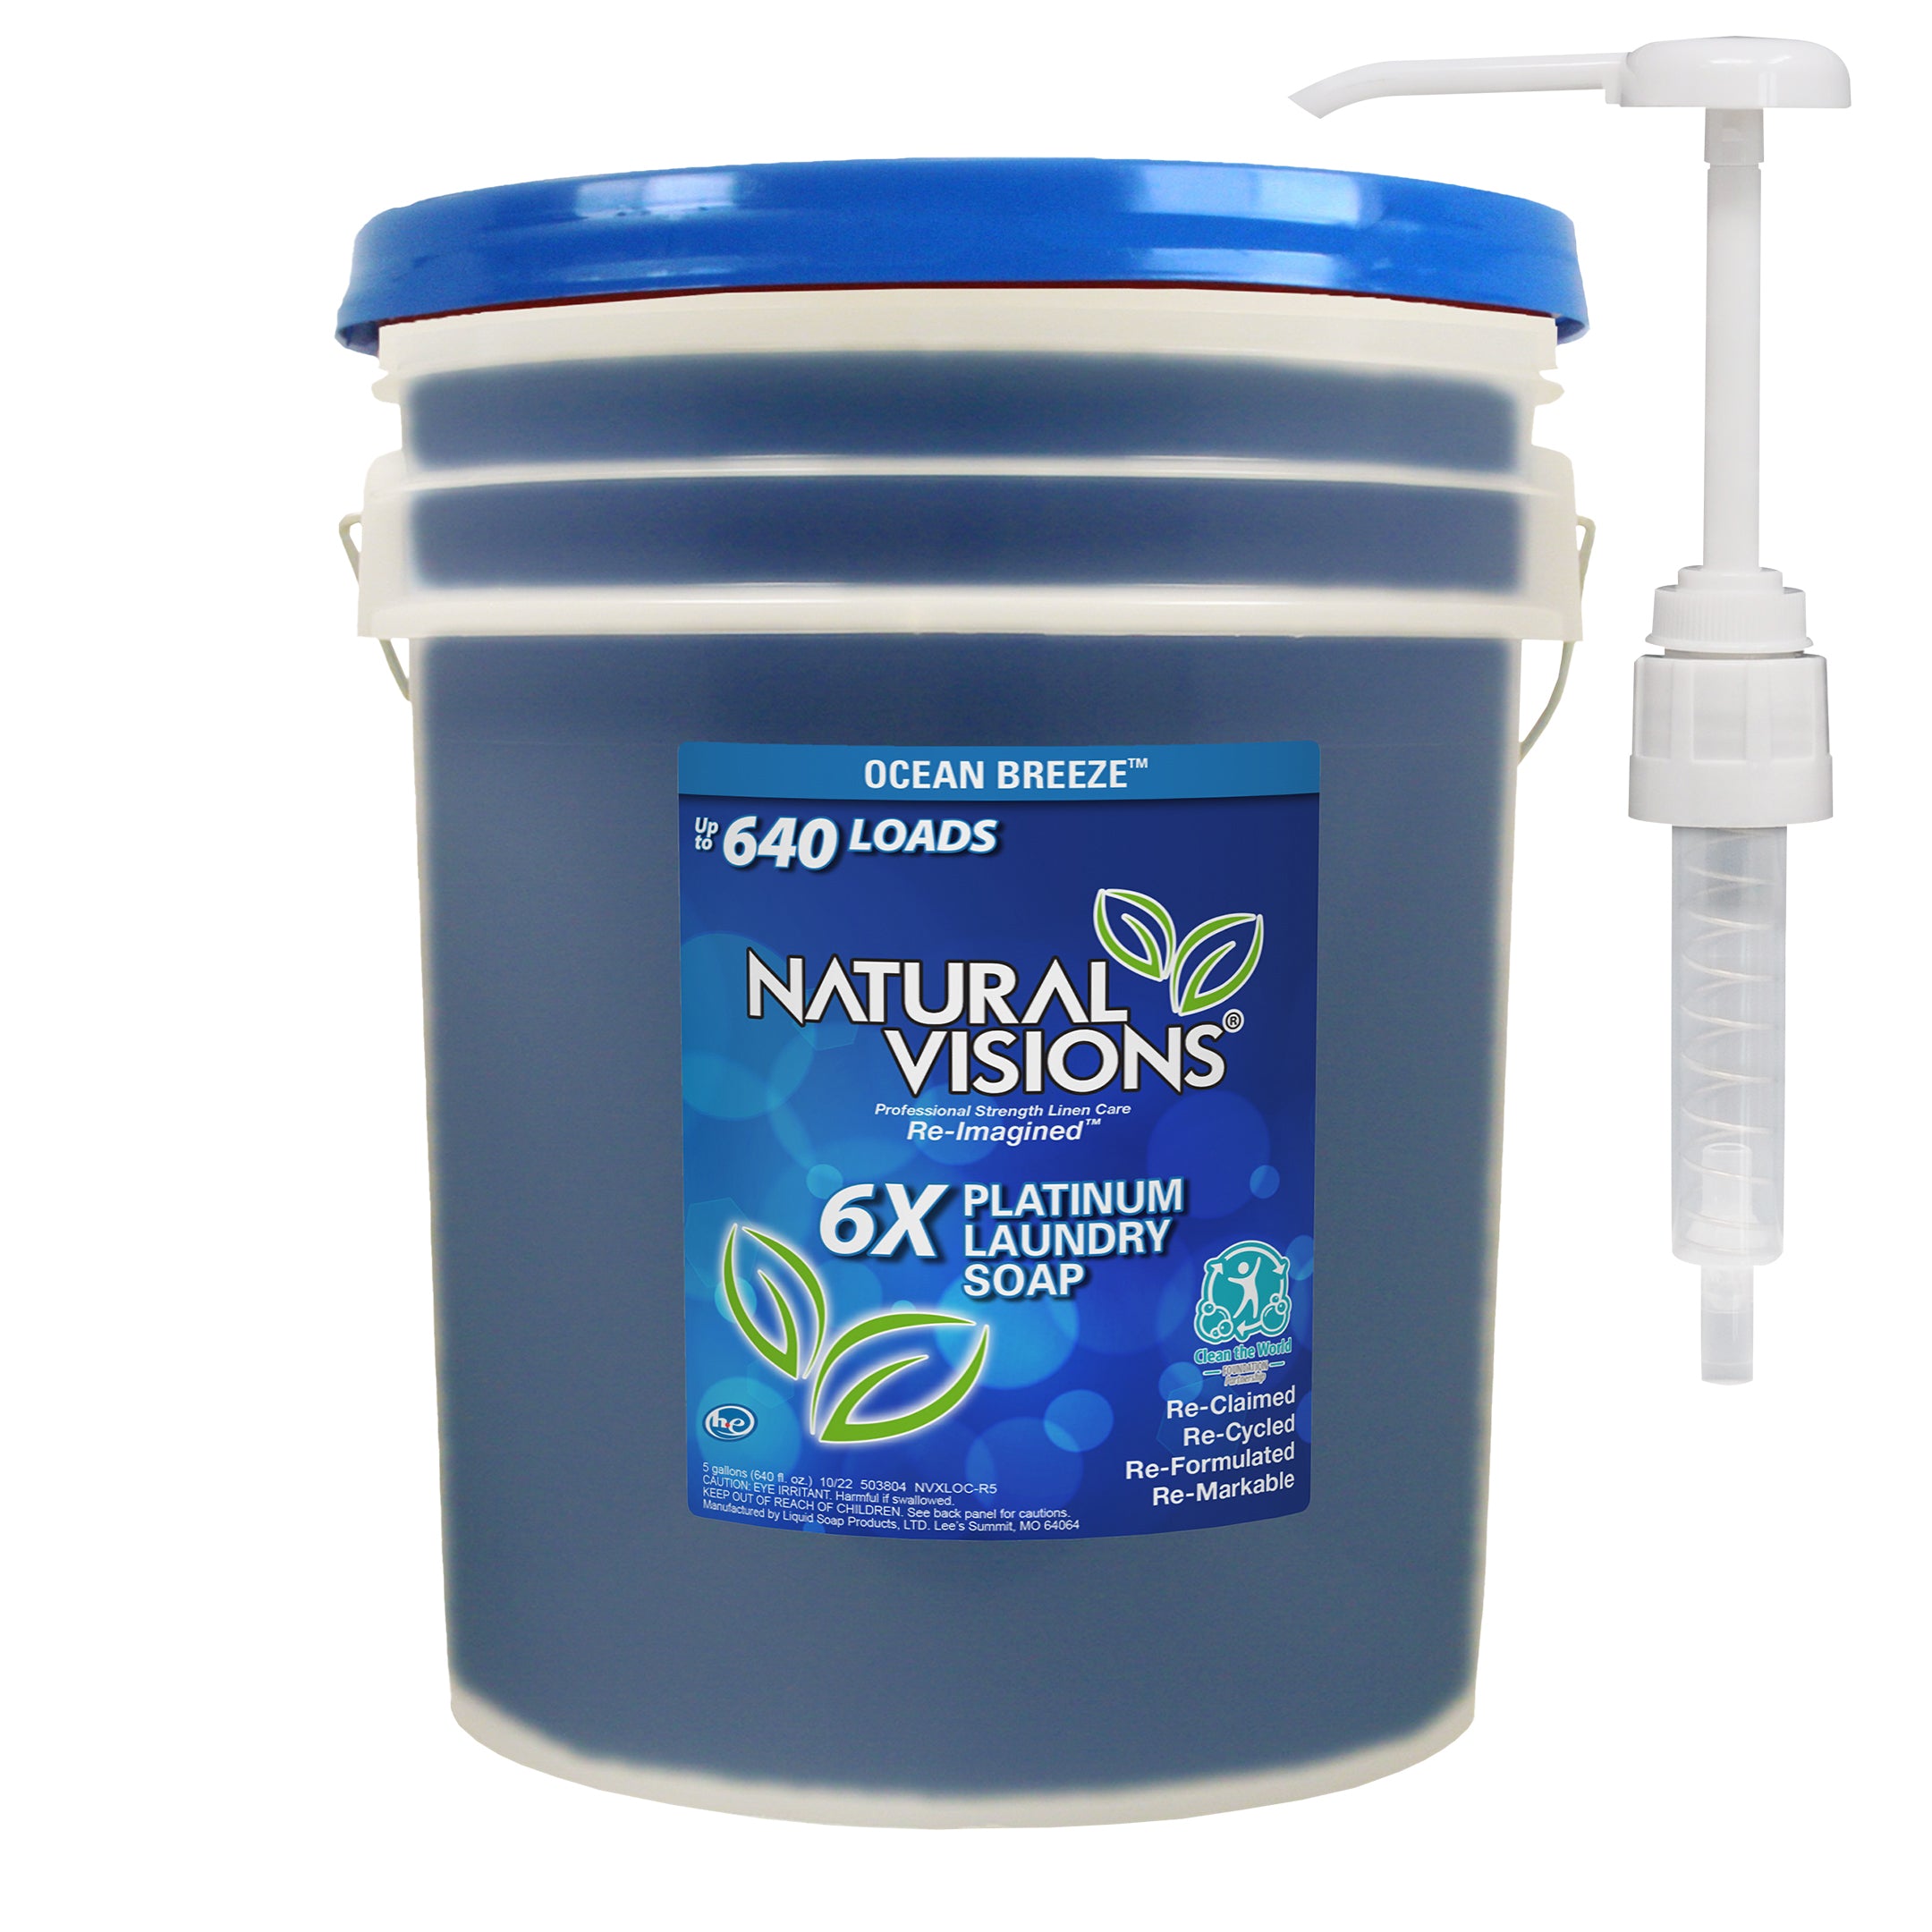 Natural Visions Ocean Breeze 6x Laundry Soap Bucket - 640oz/1pk